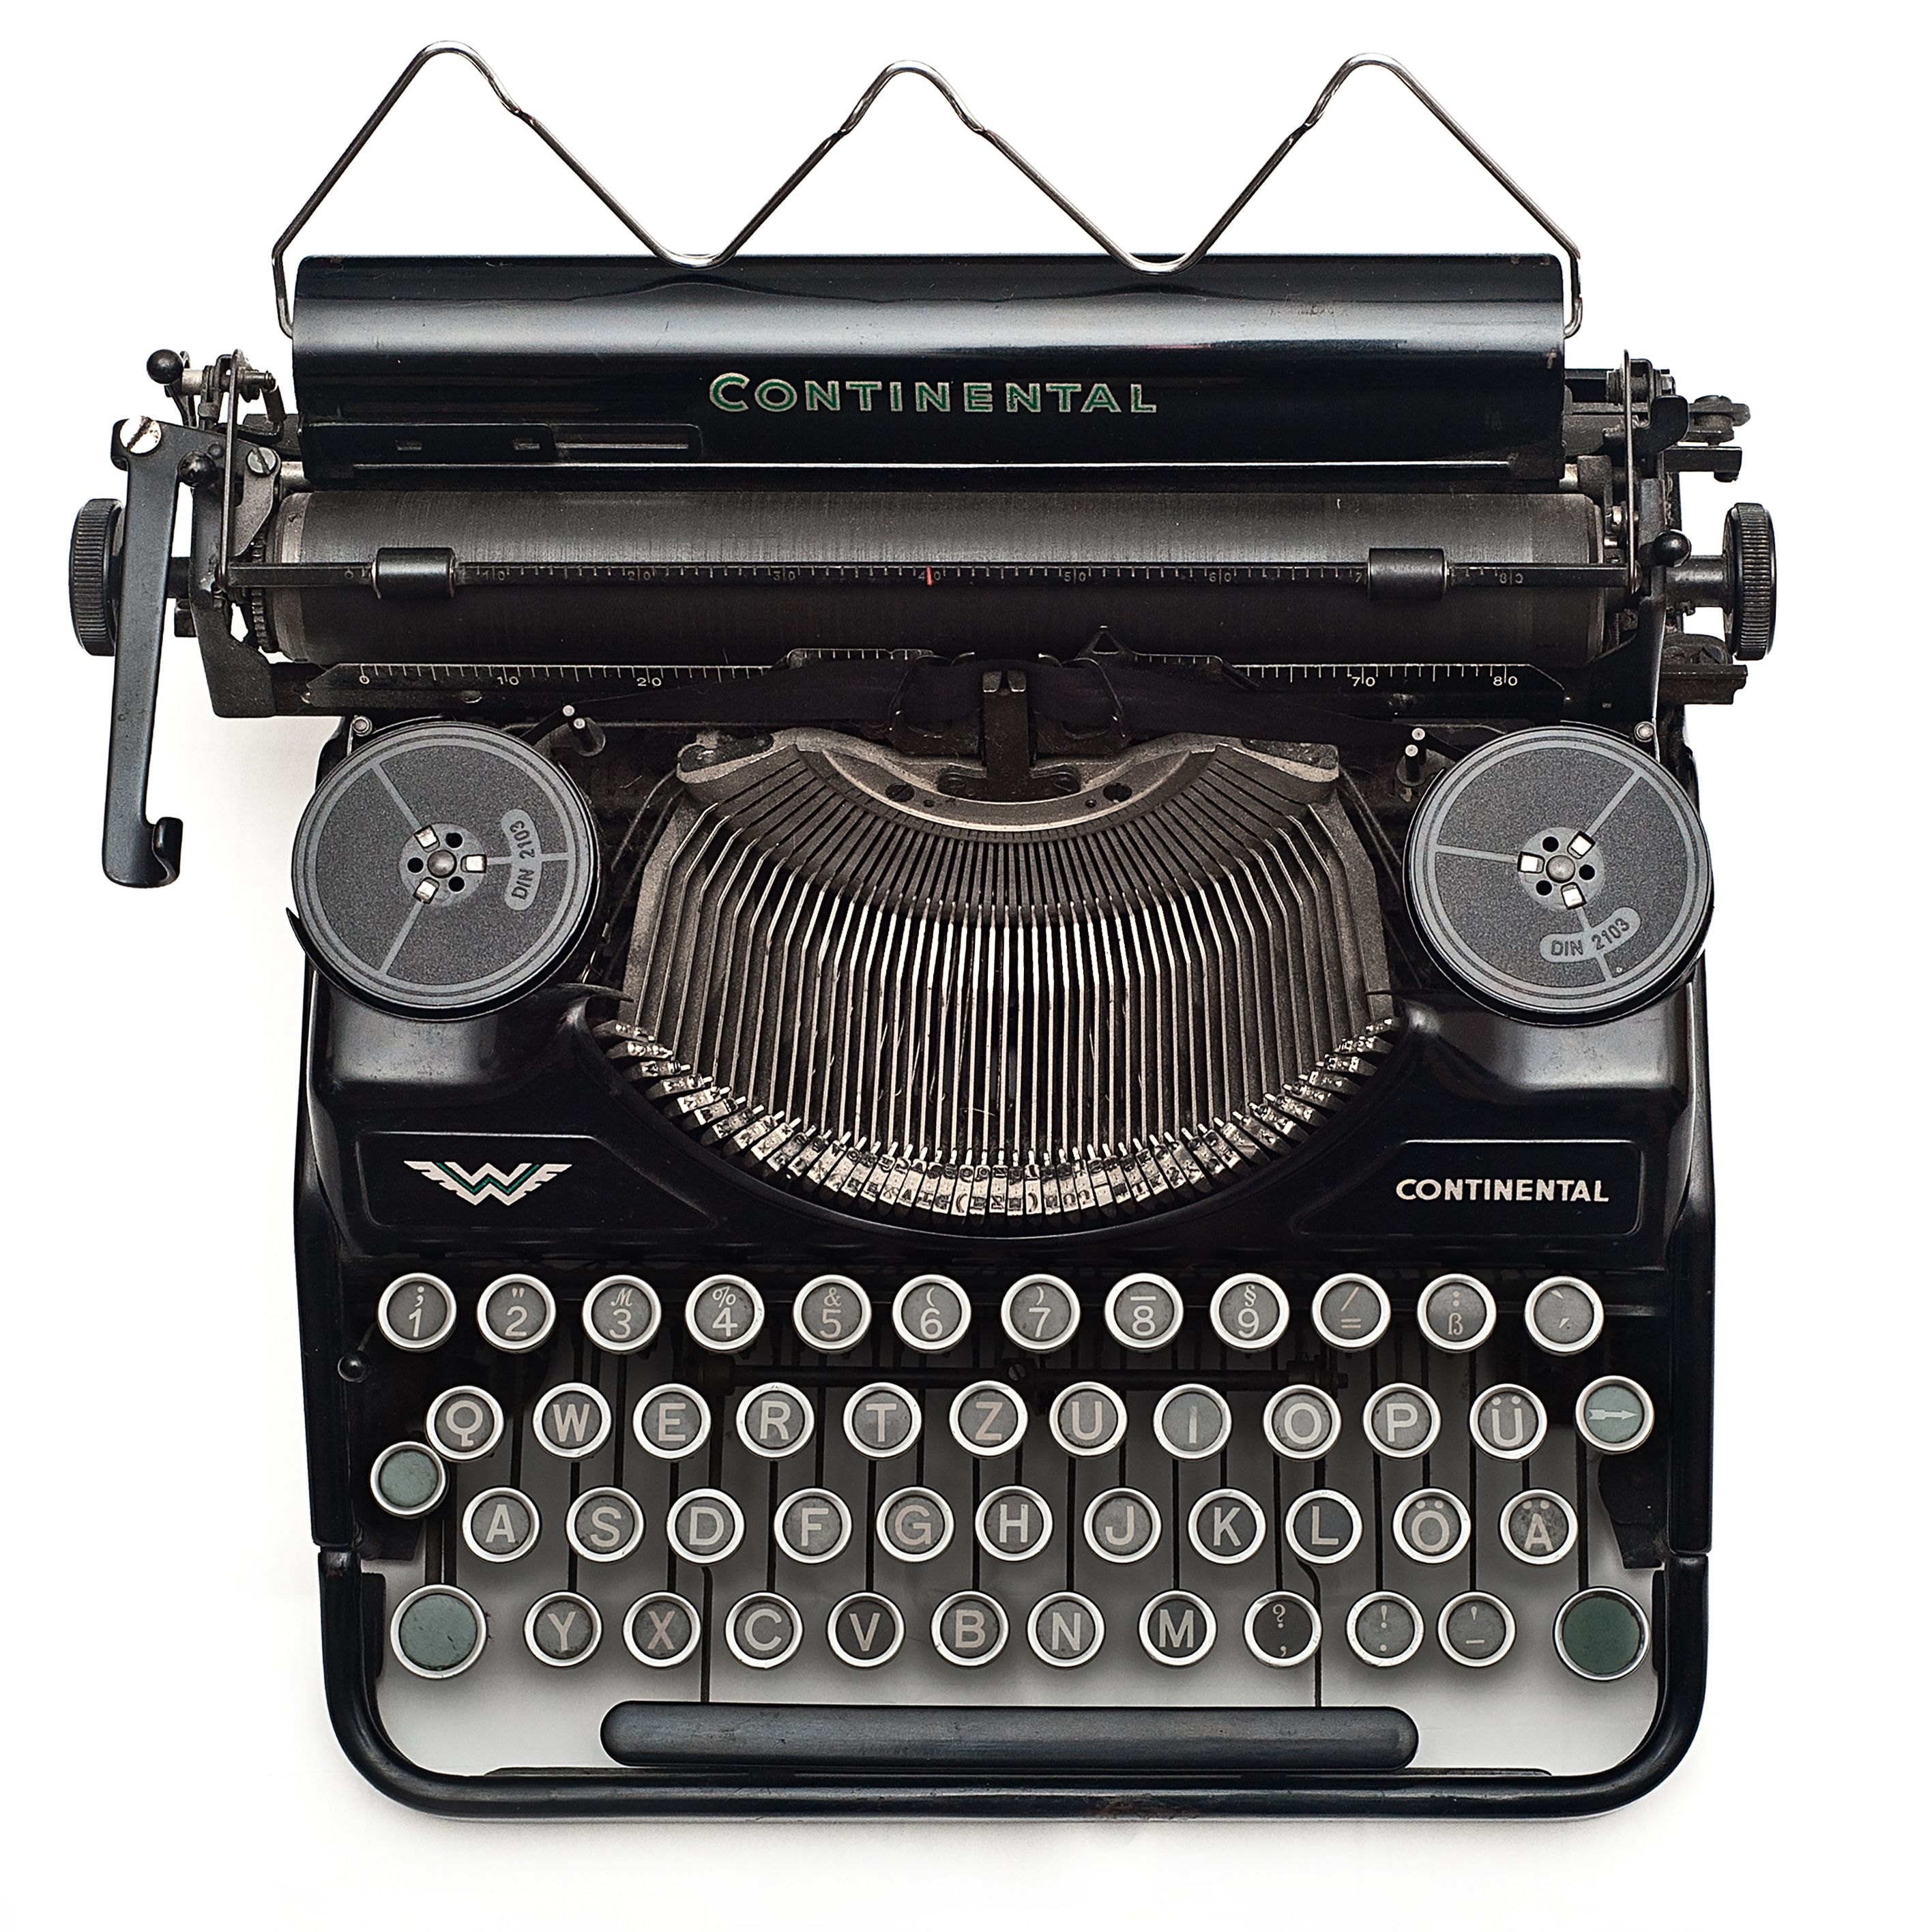 Black vintage typewriter photo